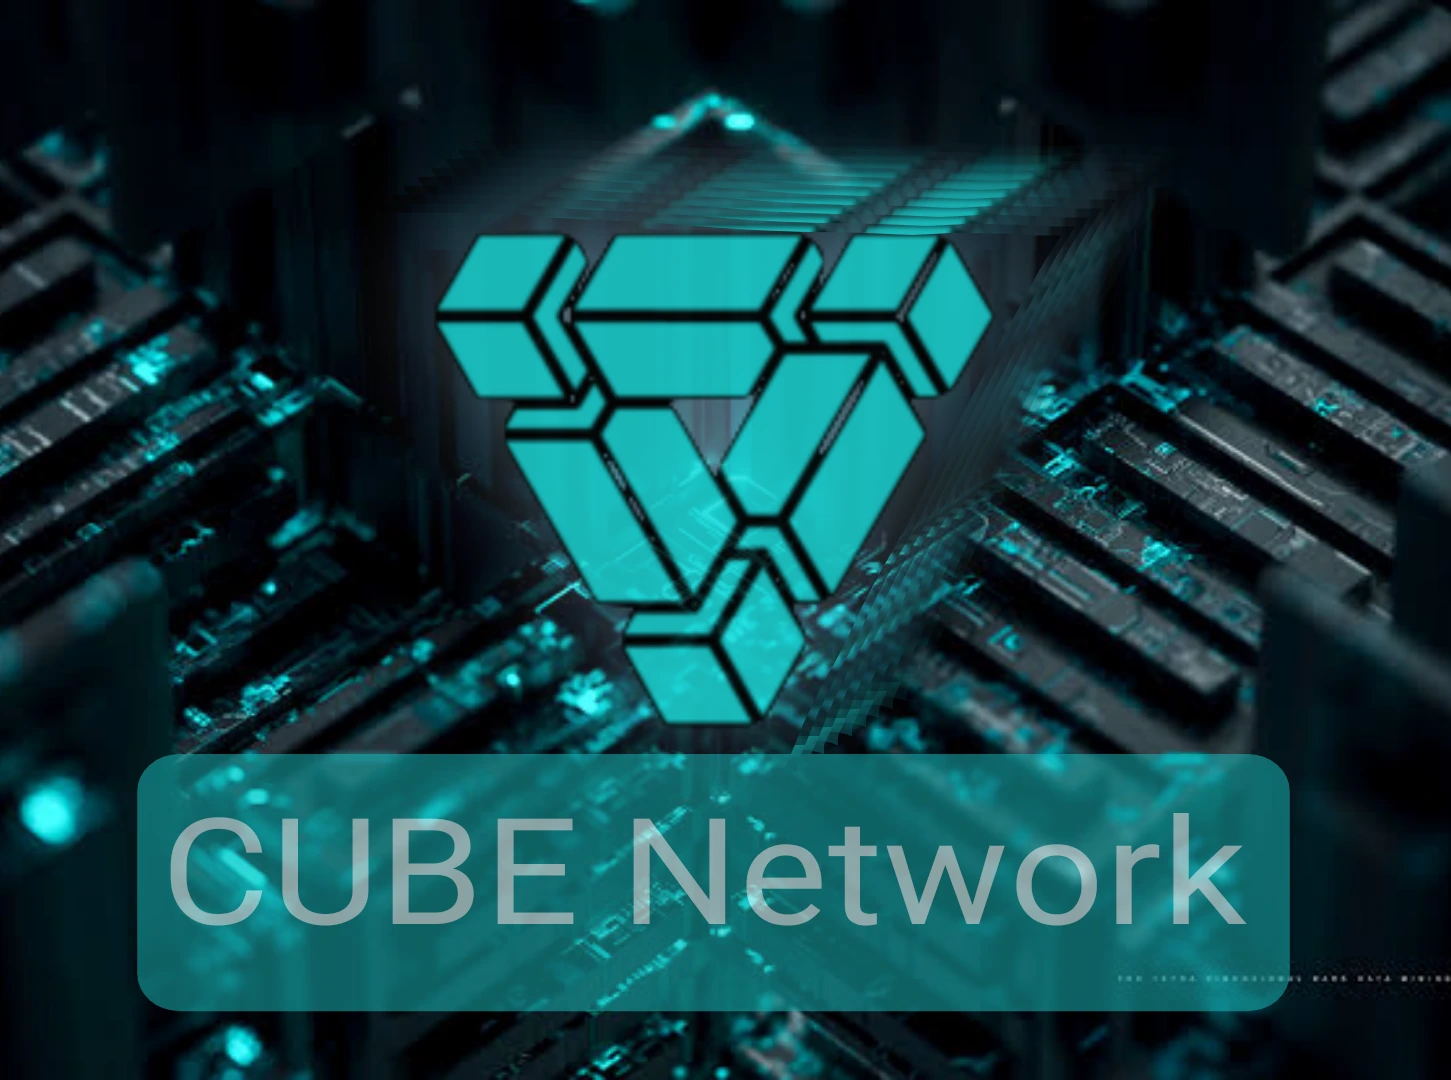 cube network كريبتوZ